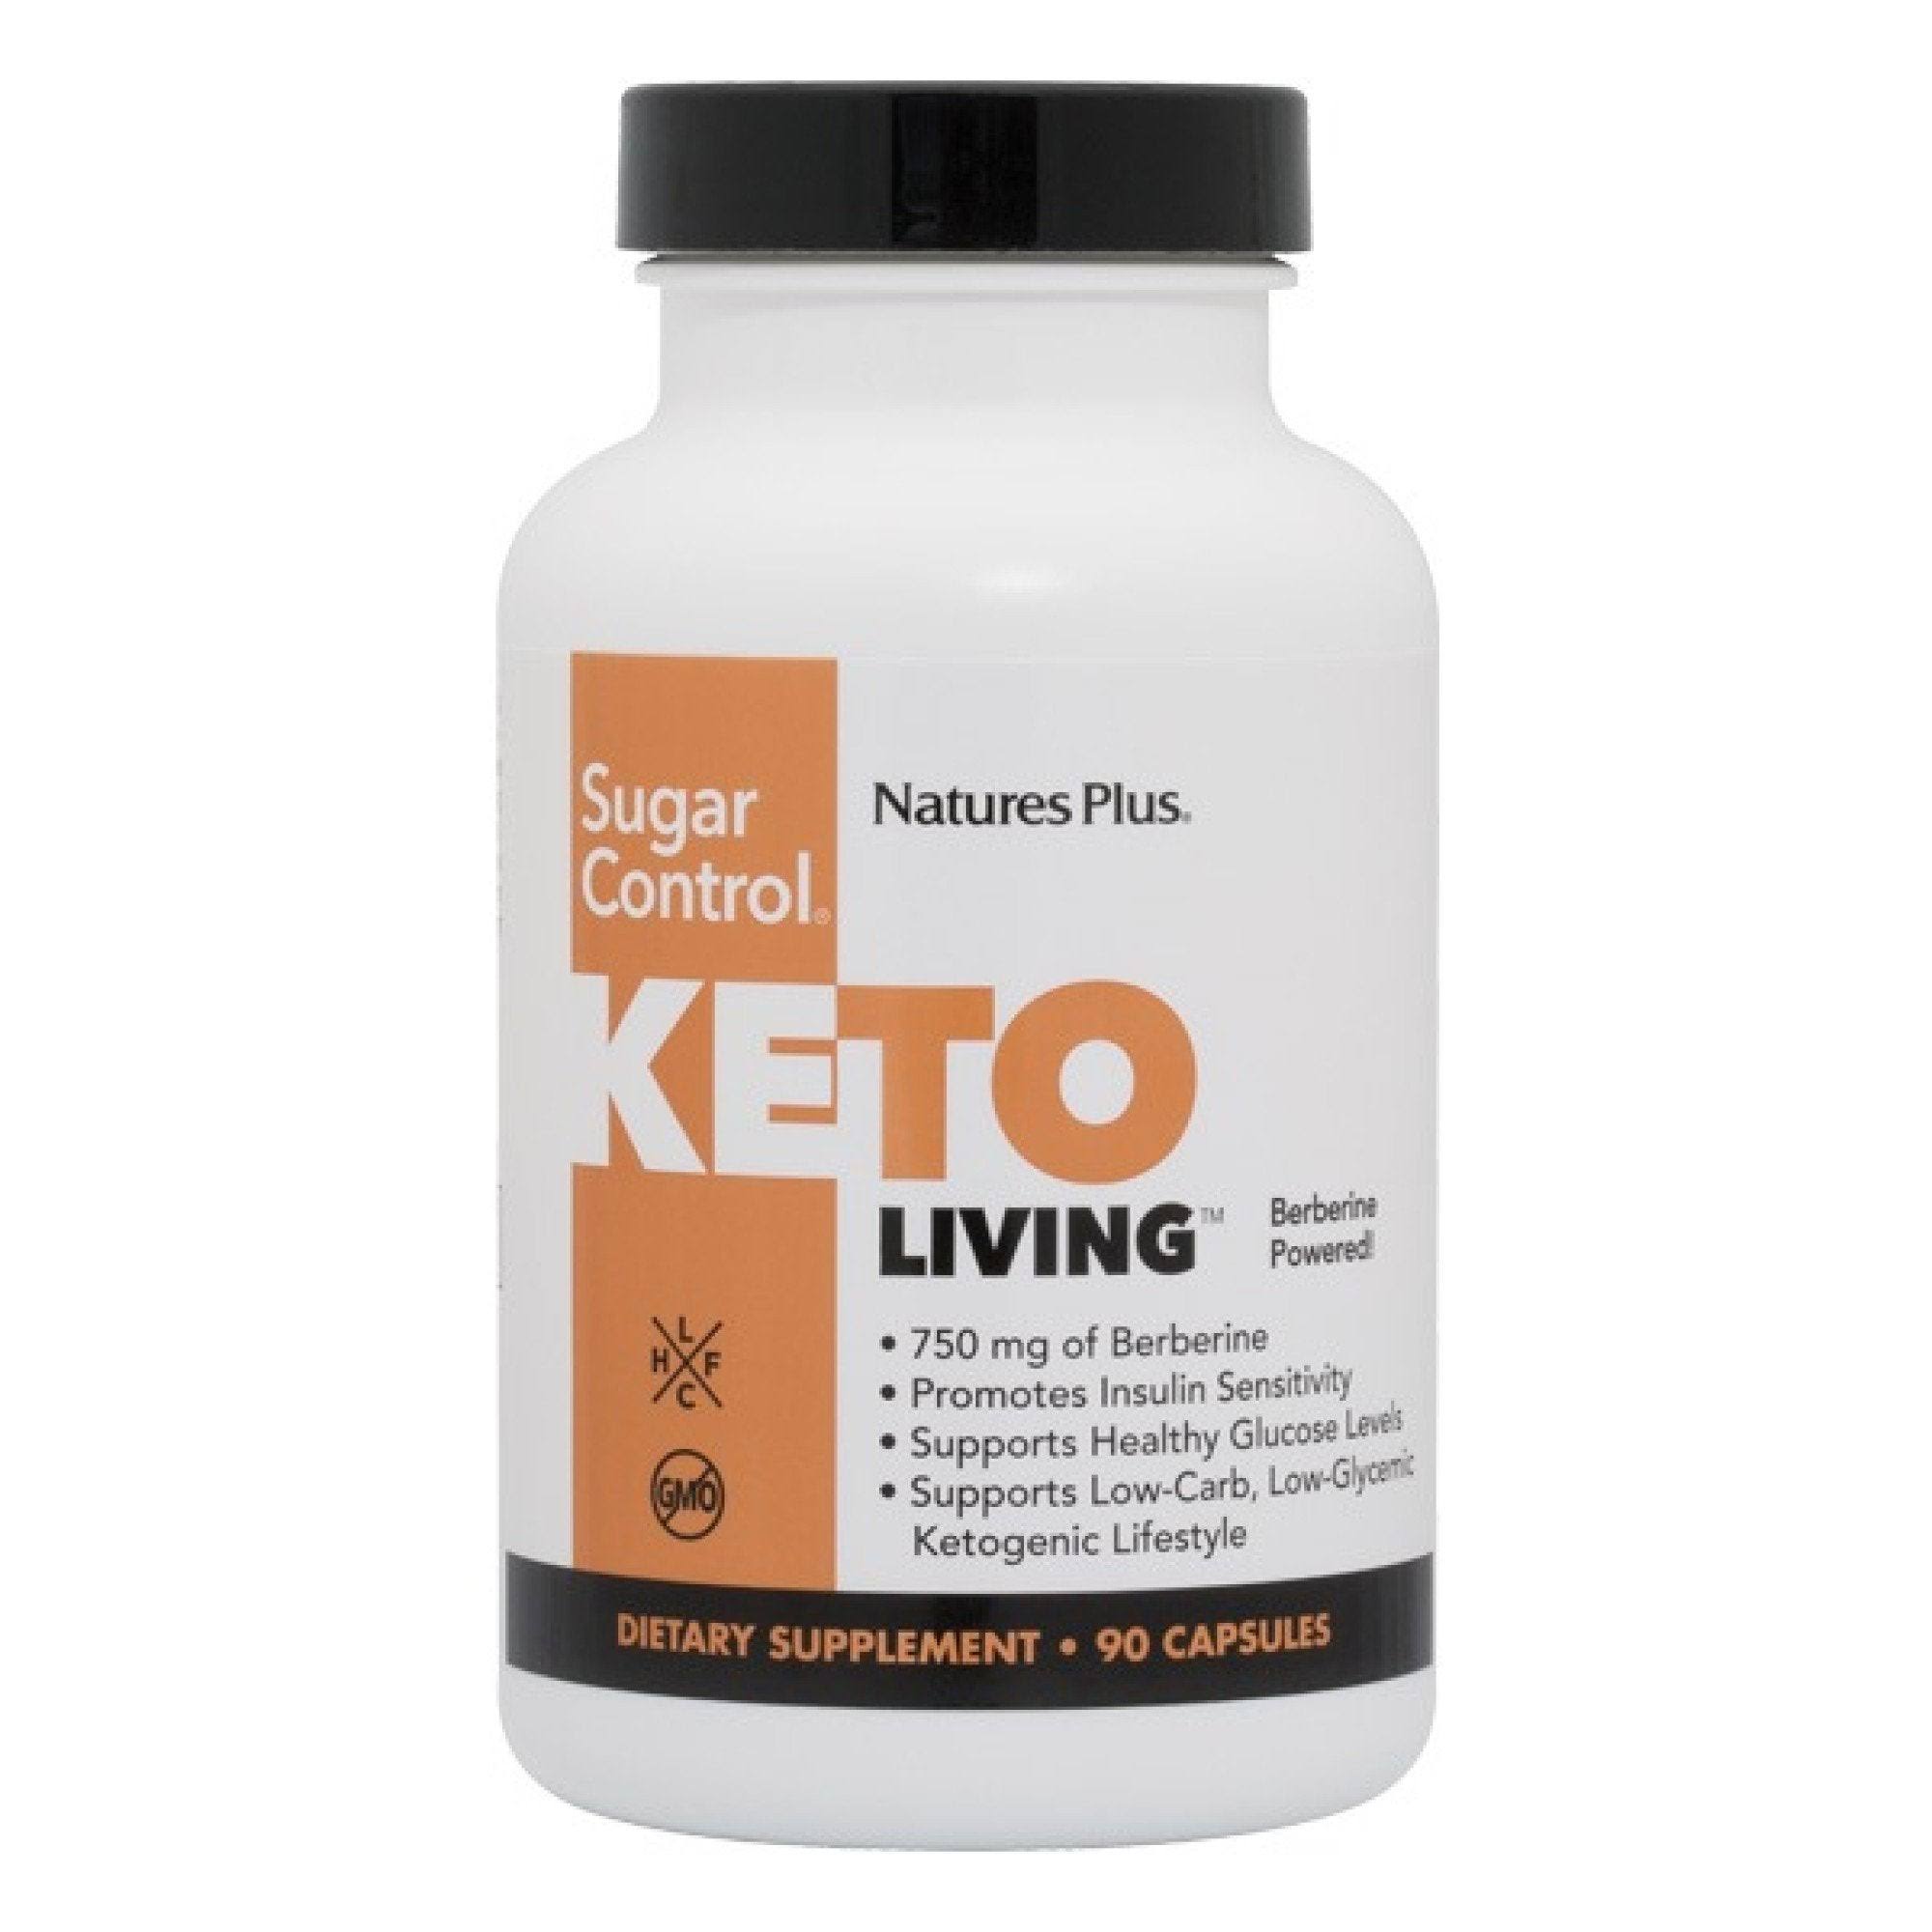 Nature's Plus Keto Living Sugar Control Capsules - x90